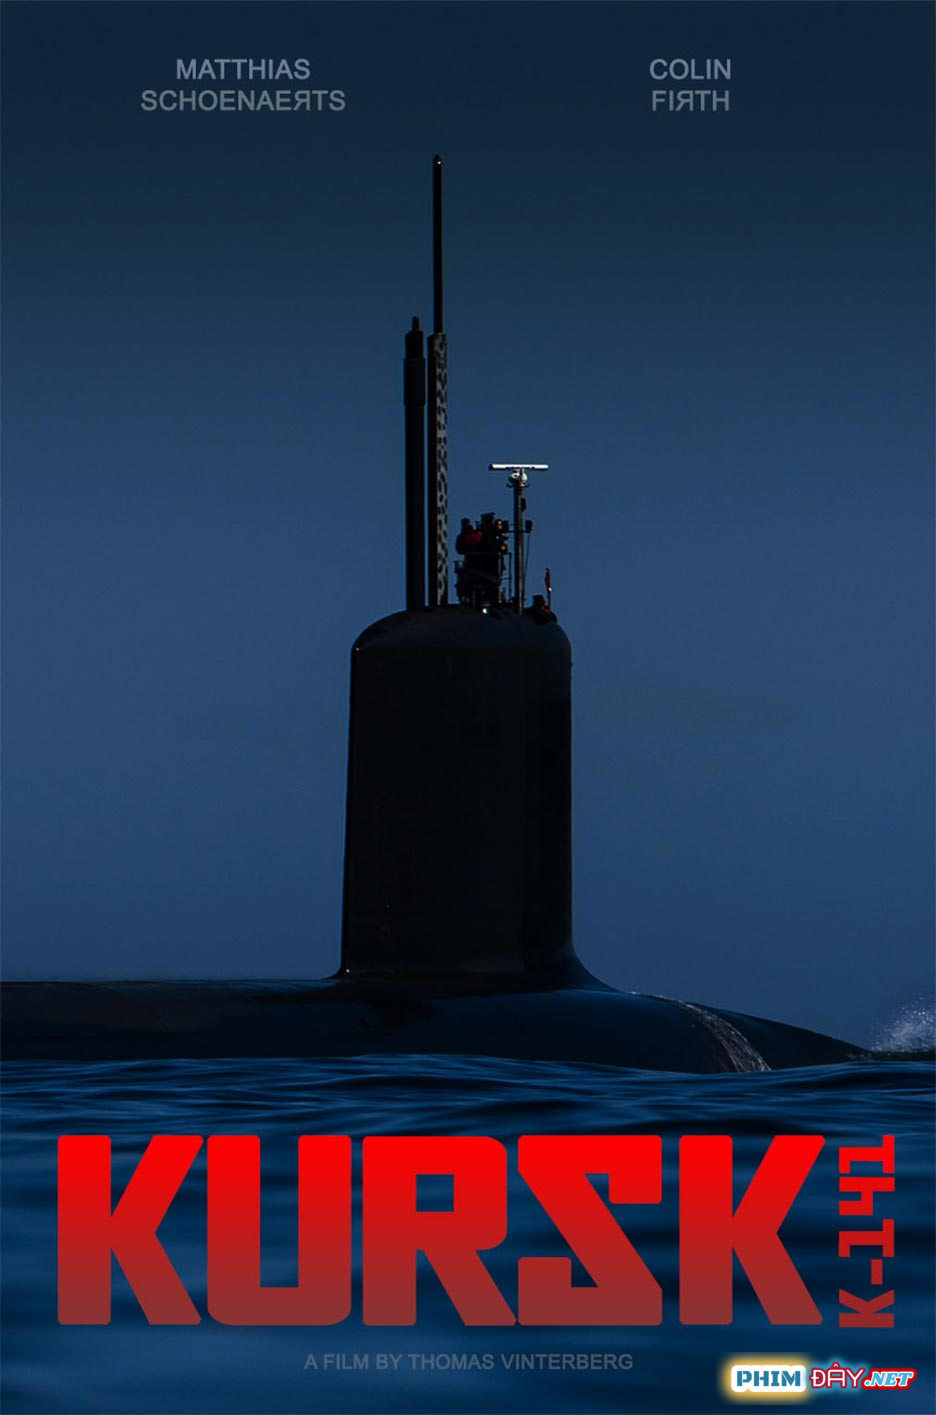 KURSK: Chiến Dịch Tàu Ngầm - Kursk (2018)